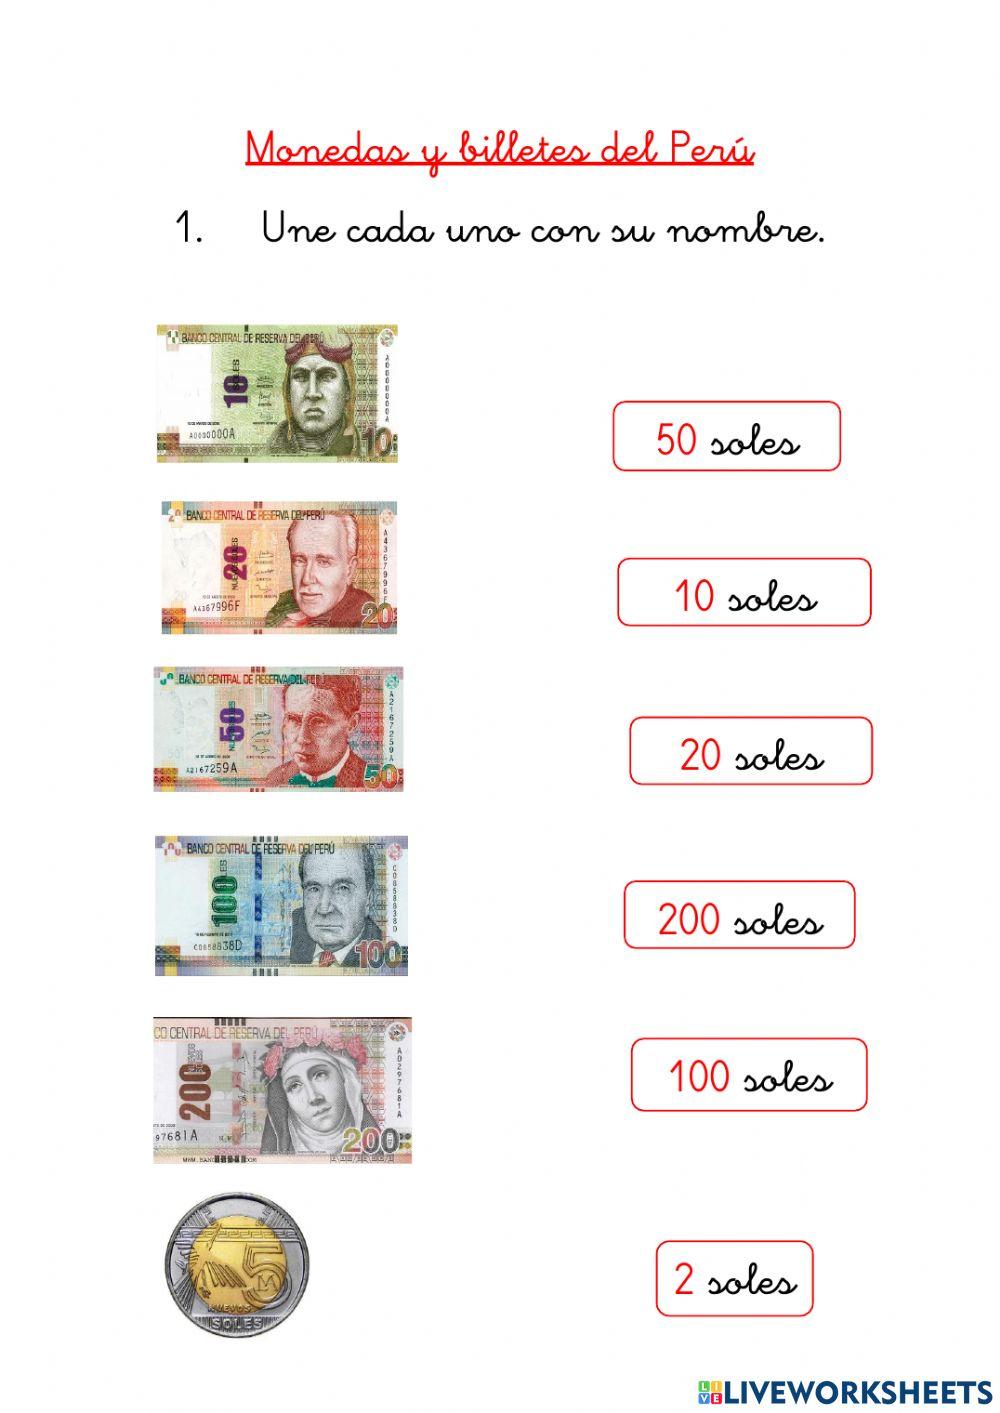 Monedas y billetes del Perú